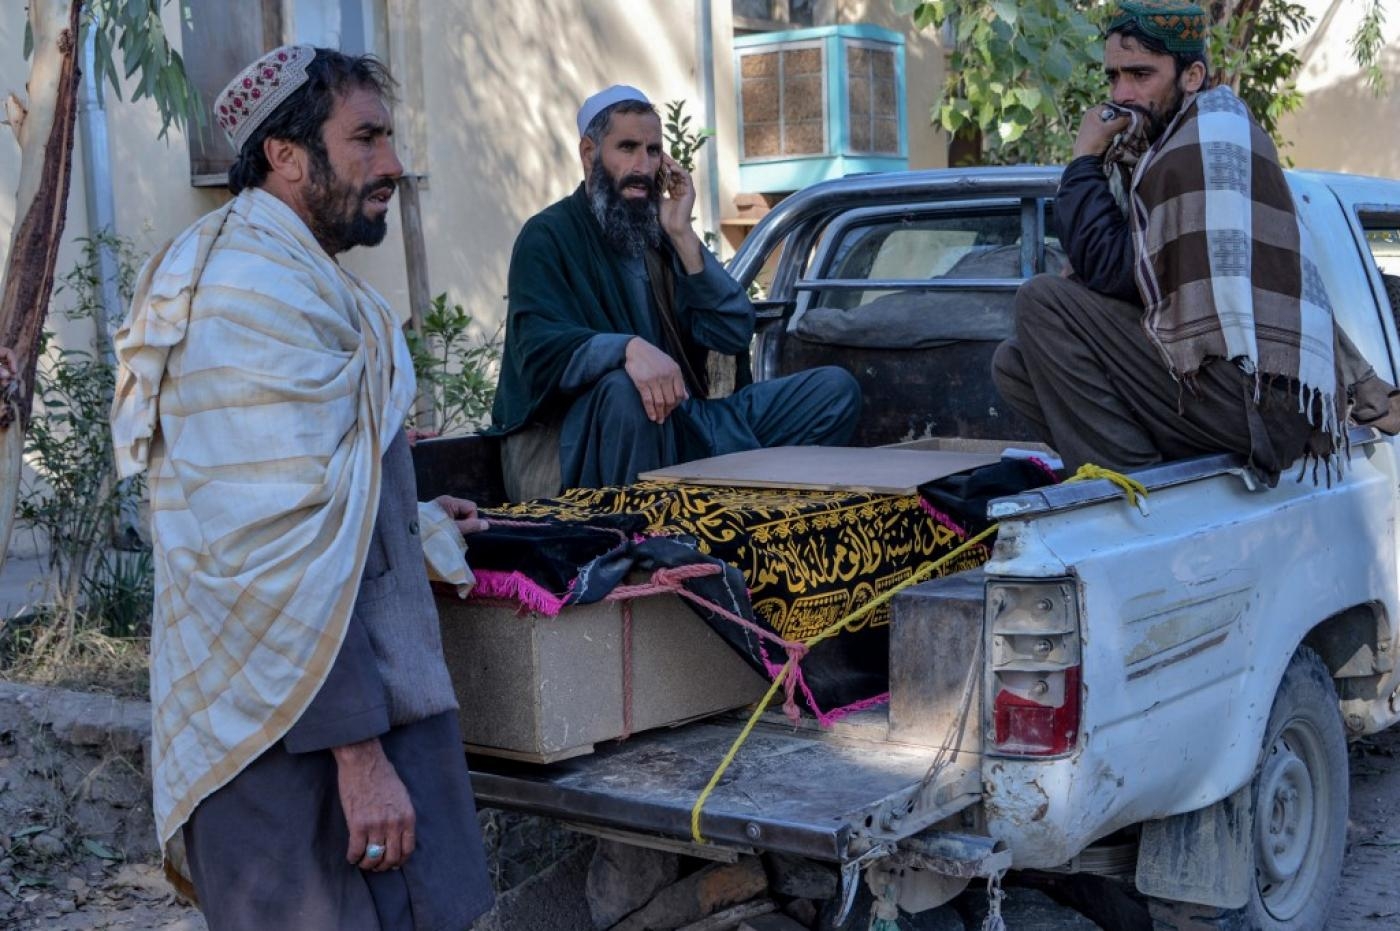 Des proches endeuillés près du cercueil d’une personne tuée au cours d’une frappe aérienne dans la province de Nangarhar, en Afghanistan, le 15 février 2020 (AFP)